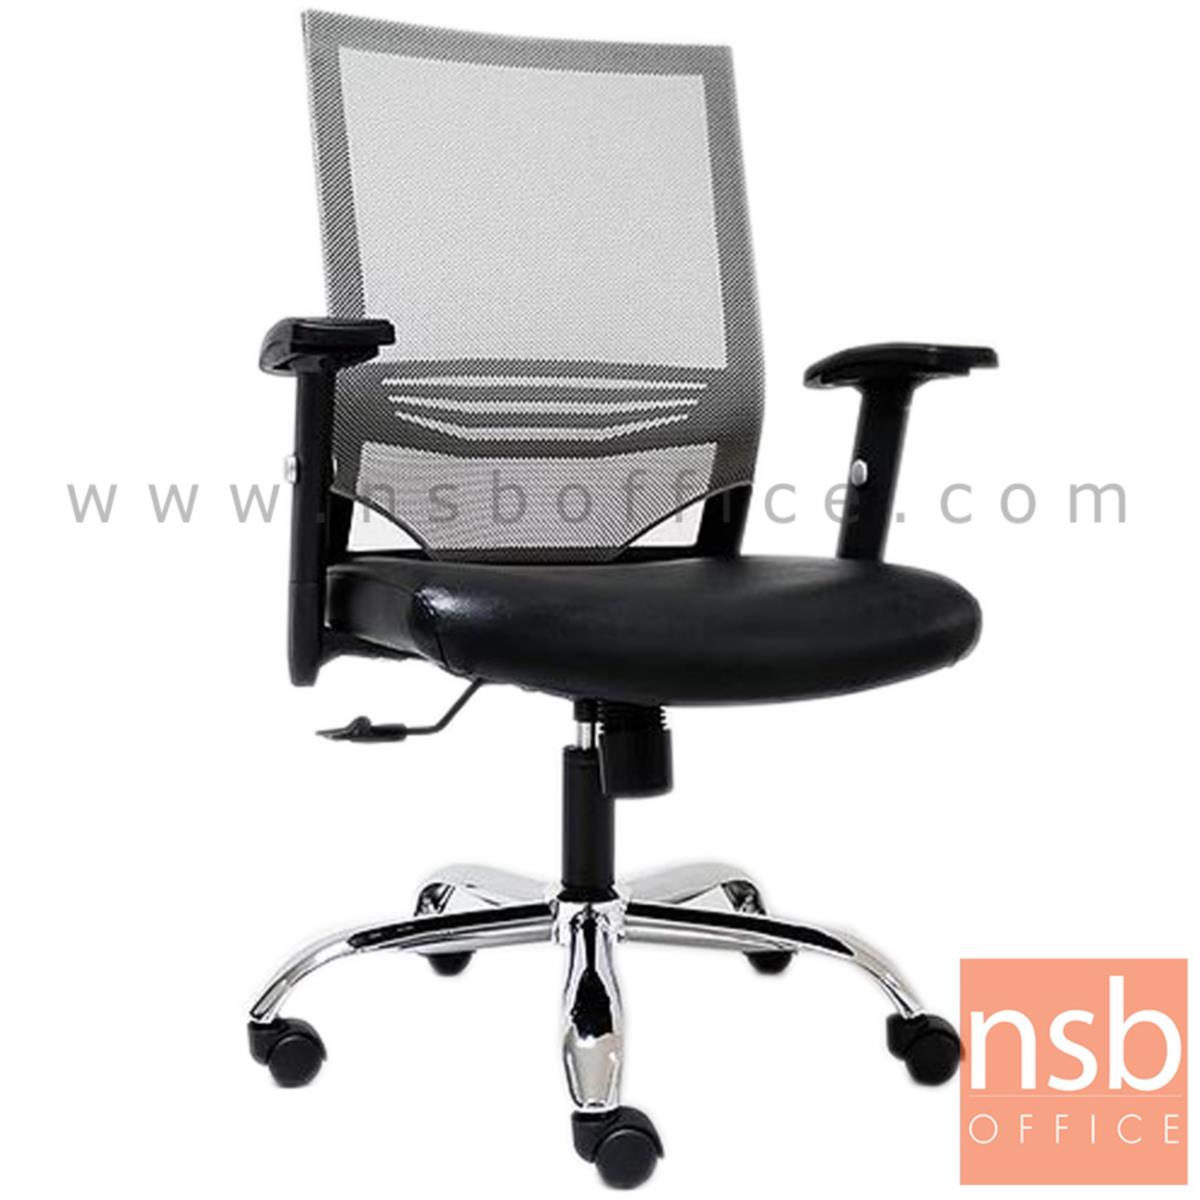 B28A070:เก้าอี้สำนักงานหลังเน็ต รุ่น Rafael (ราฟาเอล) โช๊คแก๊ส มีก้อนโยก  มี lumbar support ที่นั่งหุ้มหนังเทียมสีดำ